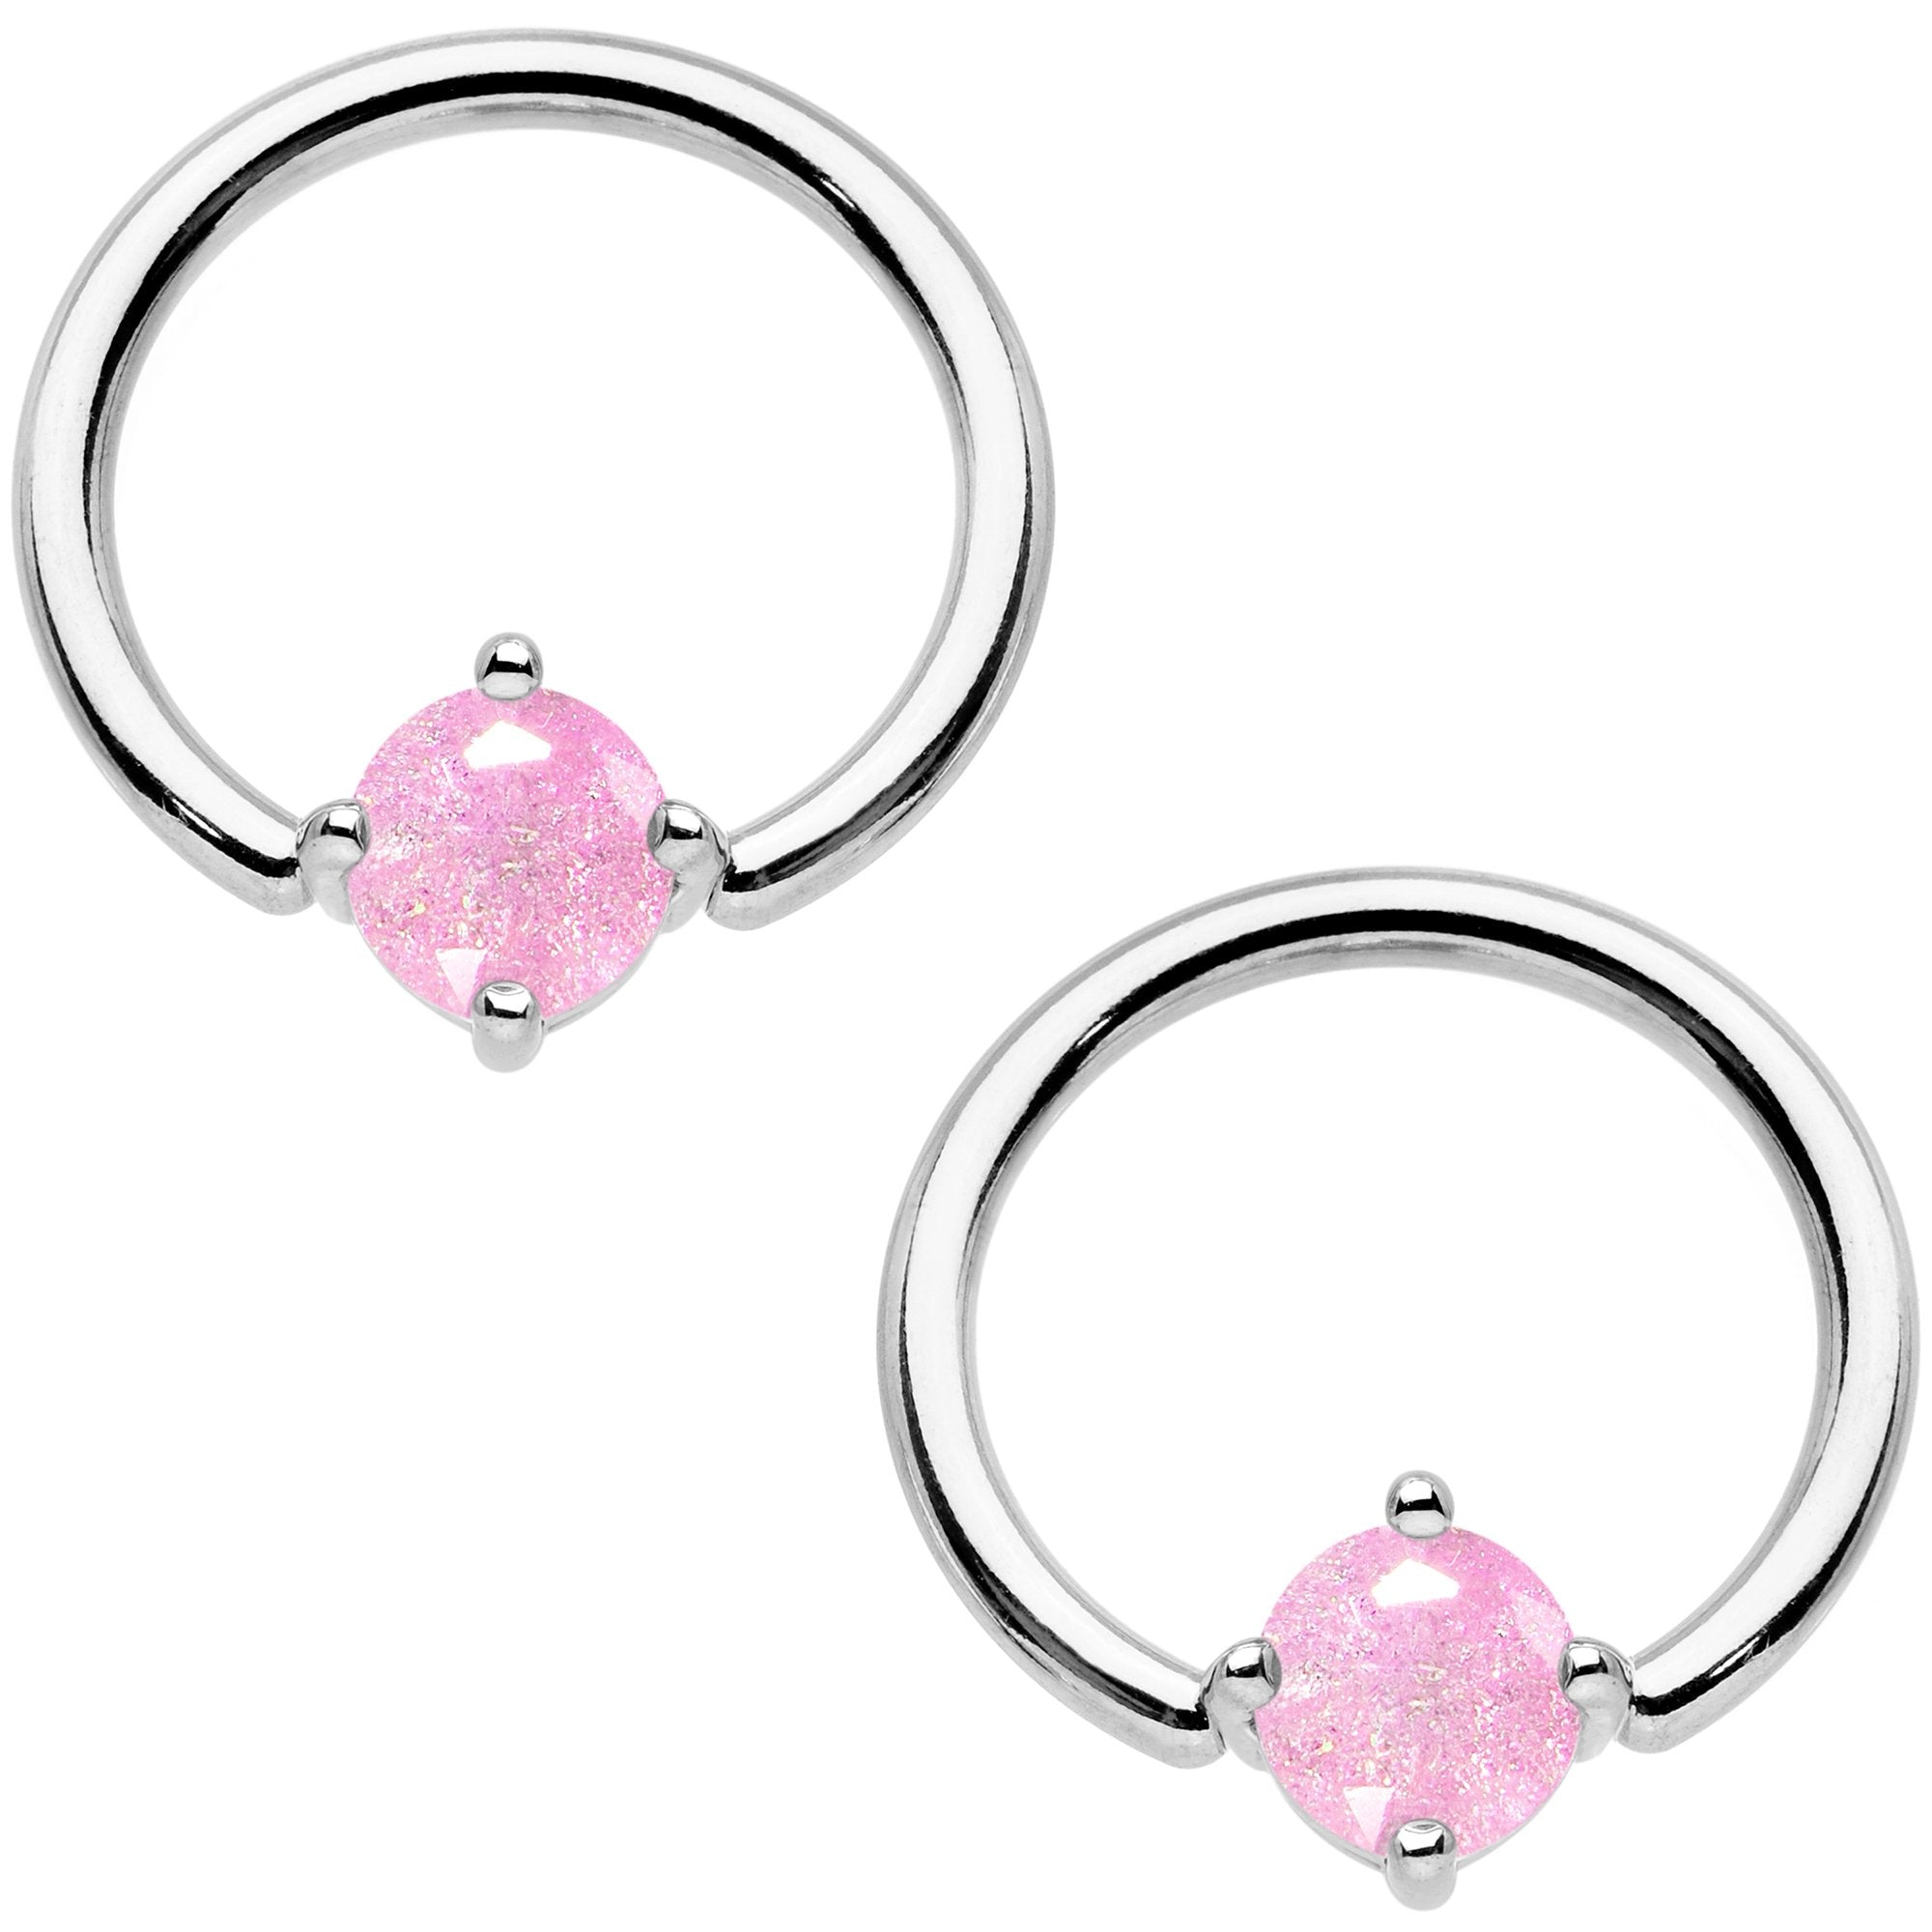 14 Gauge Pink CZ Gem BCR Captive Ring Barbell Nipple Ring Set